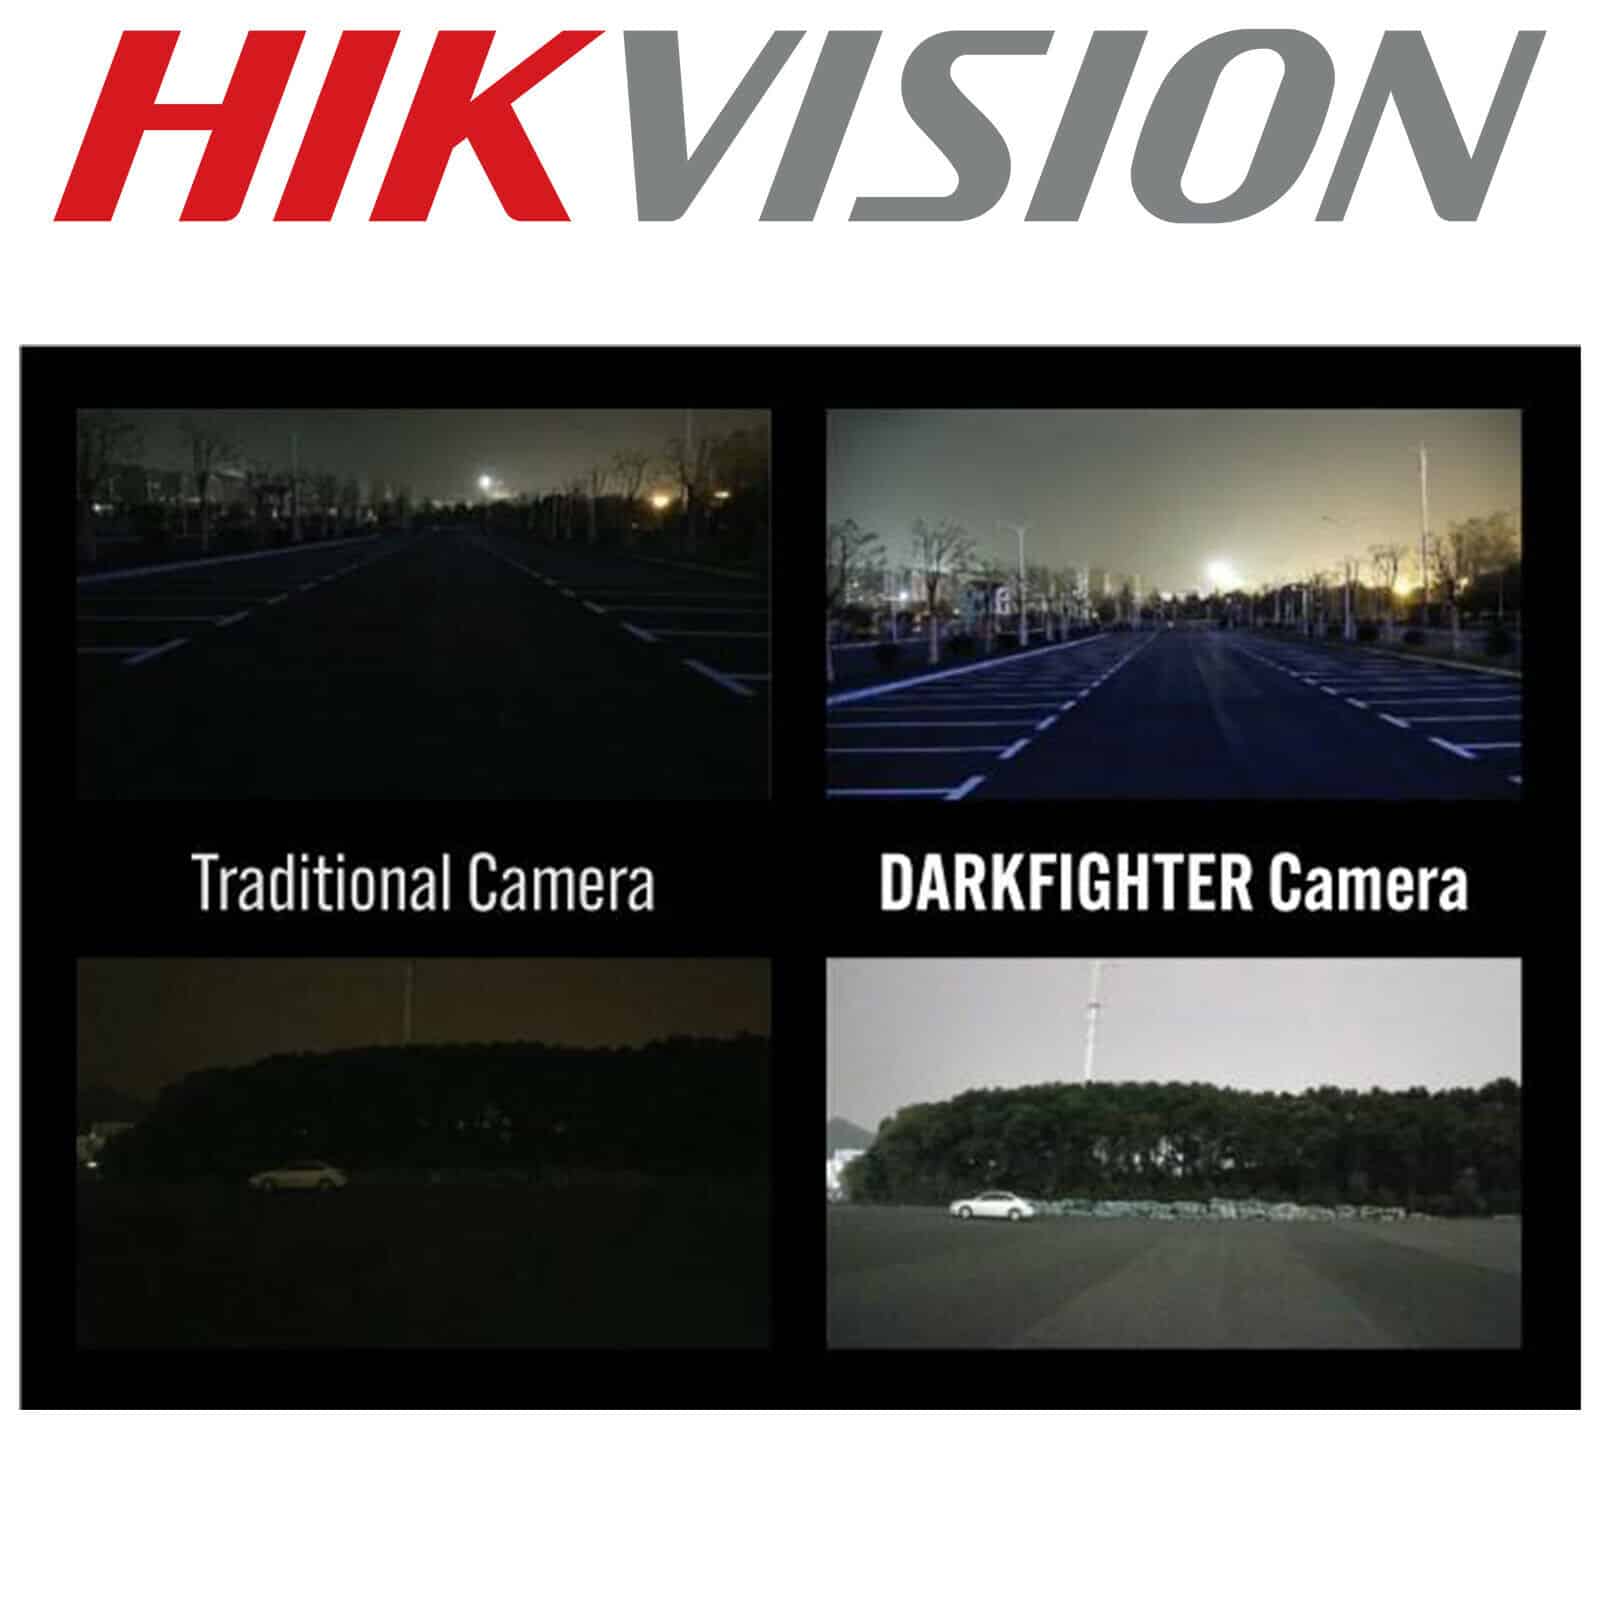 hikvision darkfighter